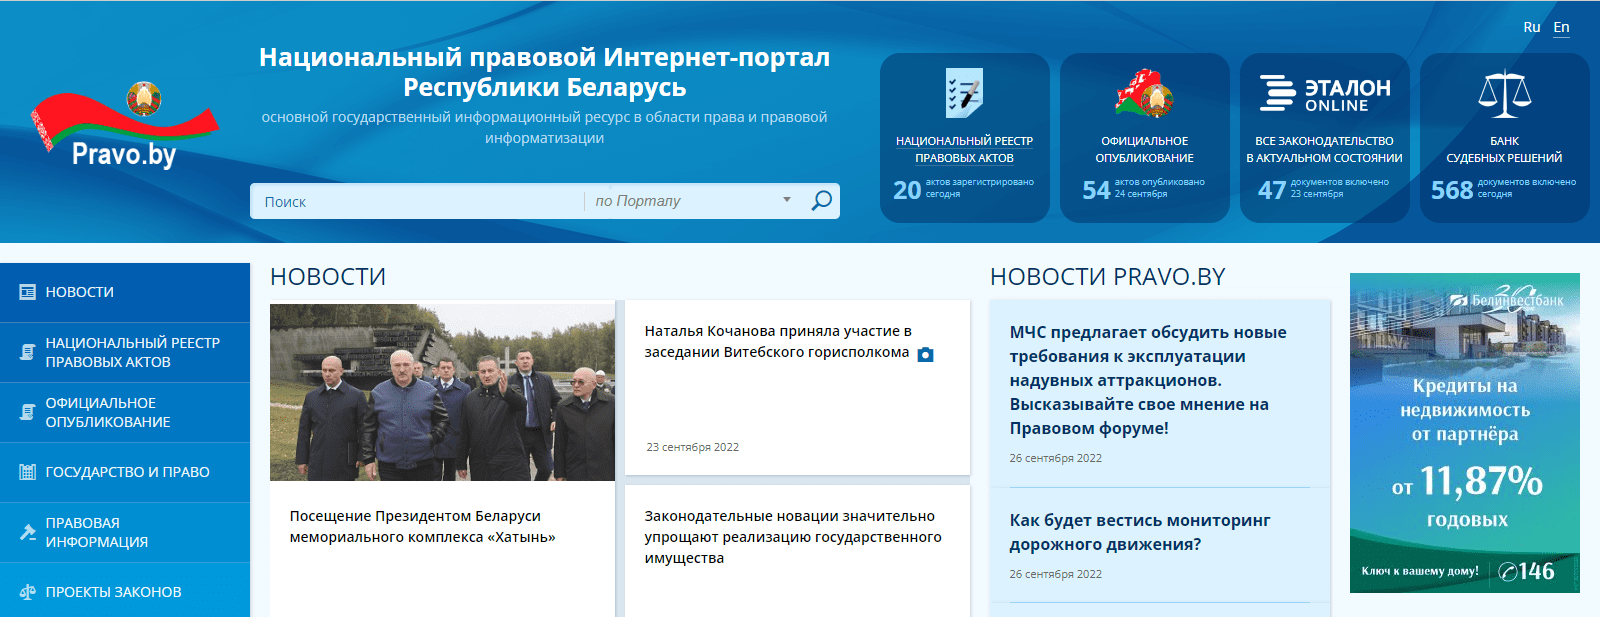 Национальный правовой Интернет-портал Республики Беларусь (pravo.by) – официальный сайт